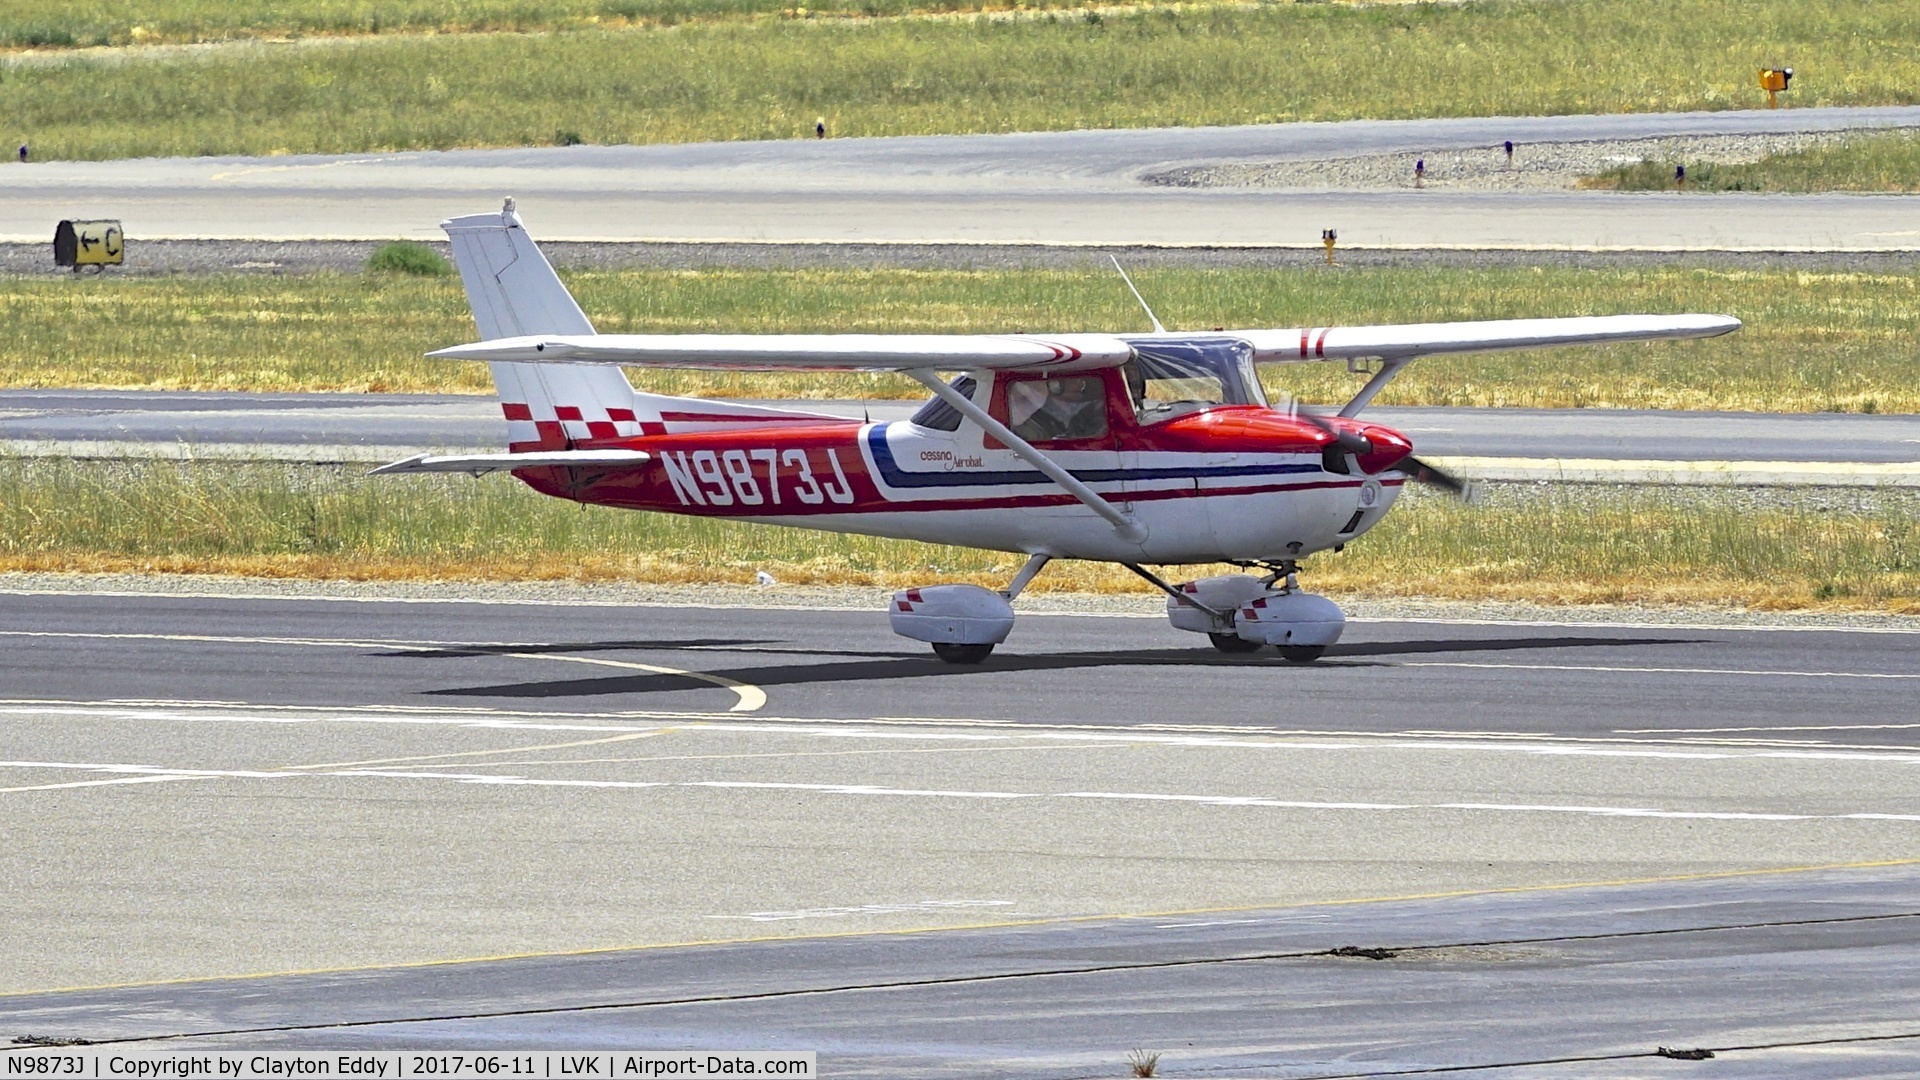 N9873J, 1976 Cessna A150M Aerobat C/N A1500682, Livermore Airport California 2017.